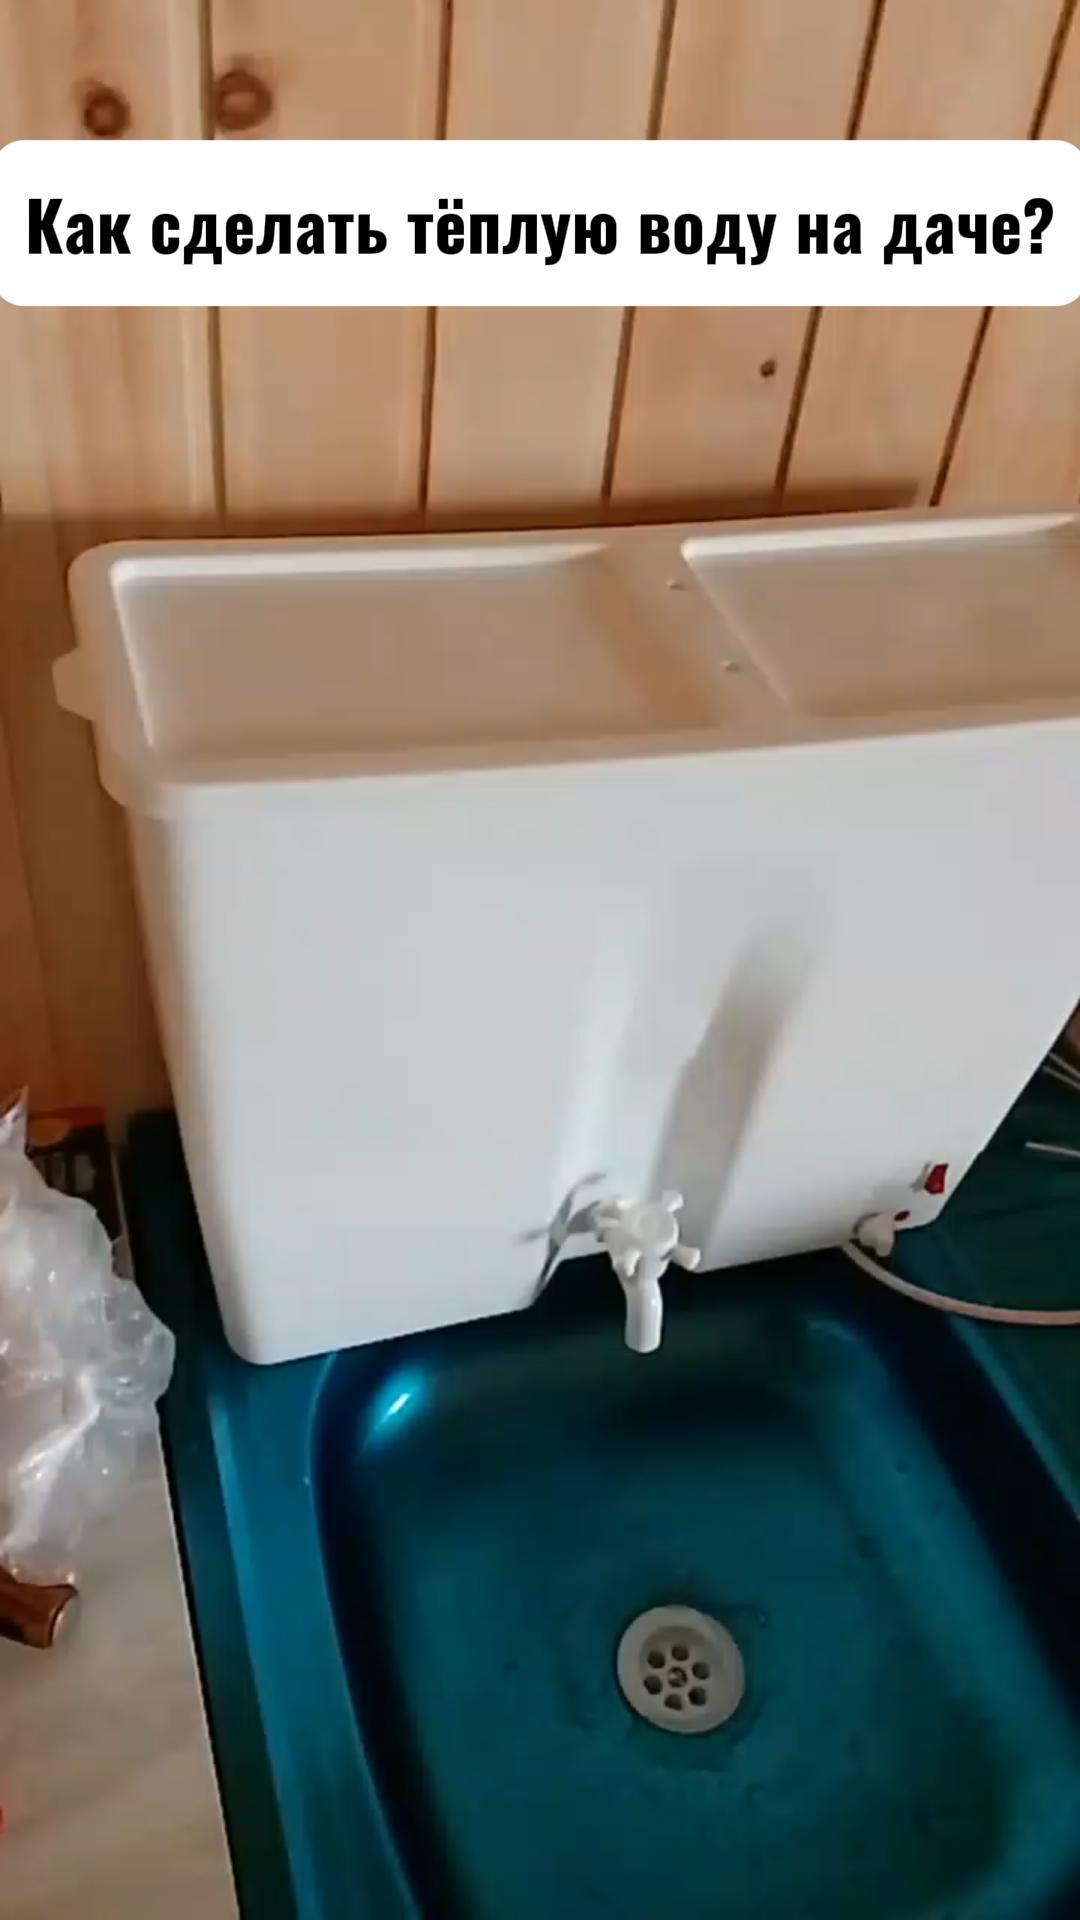 Как сделать тёплую воду на даче?